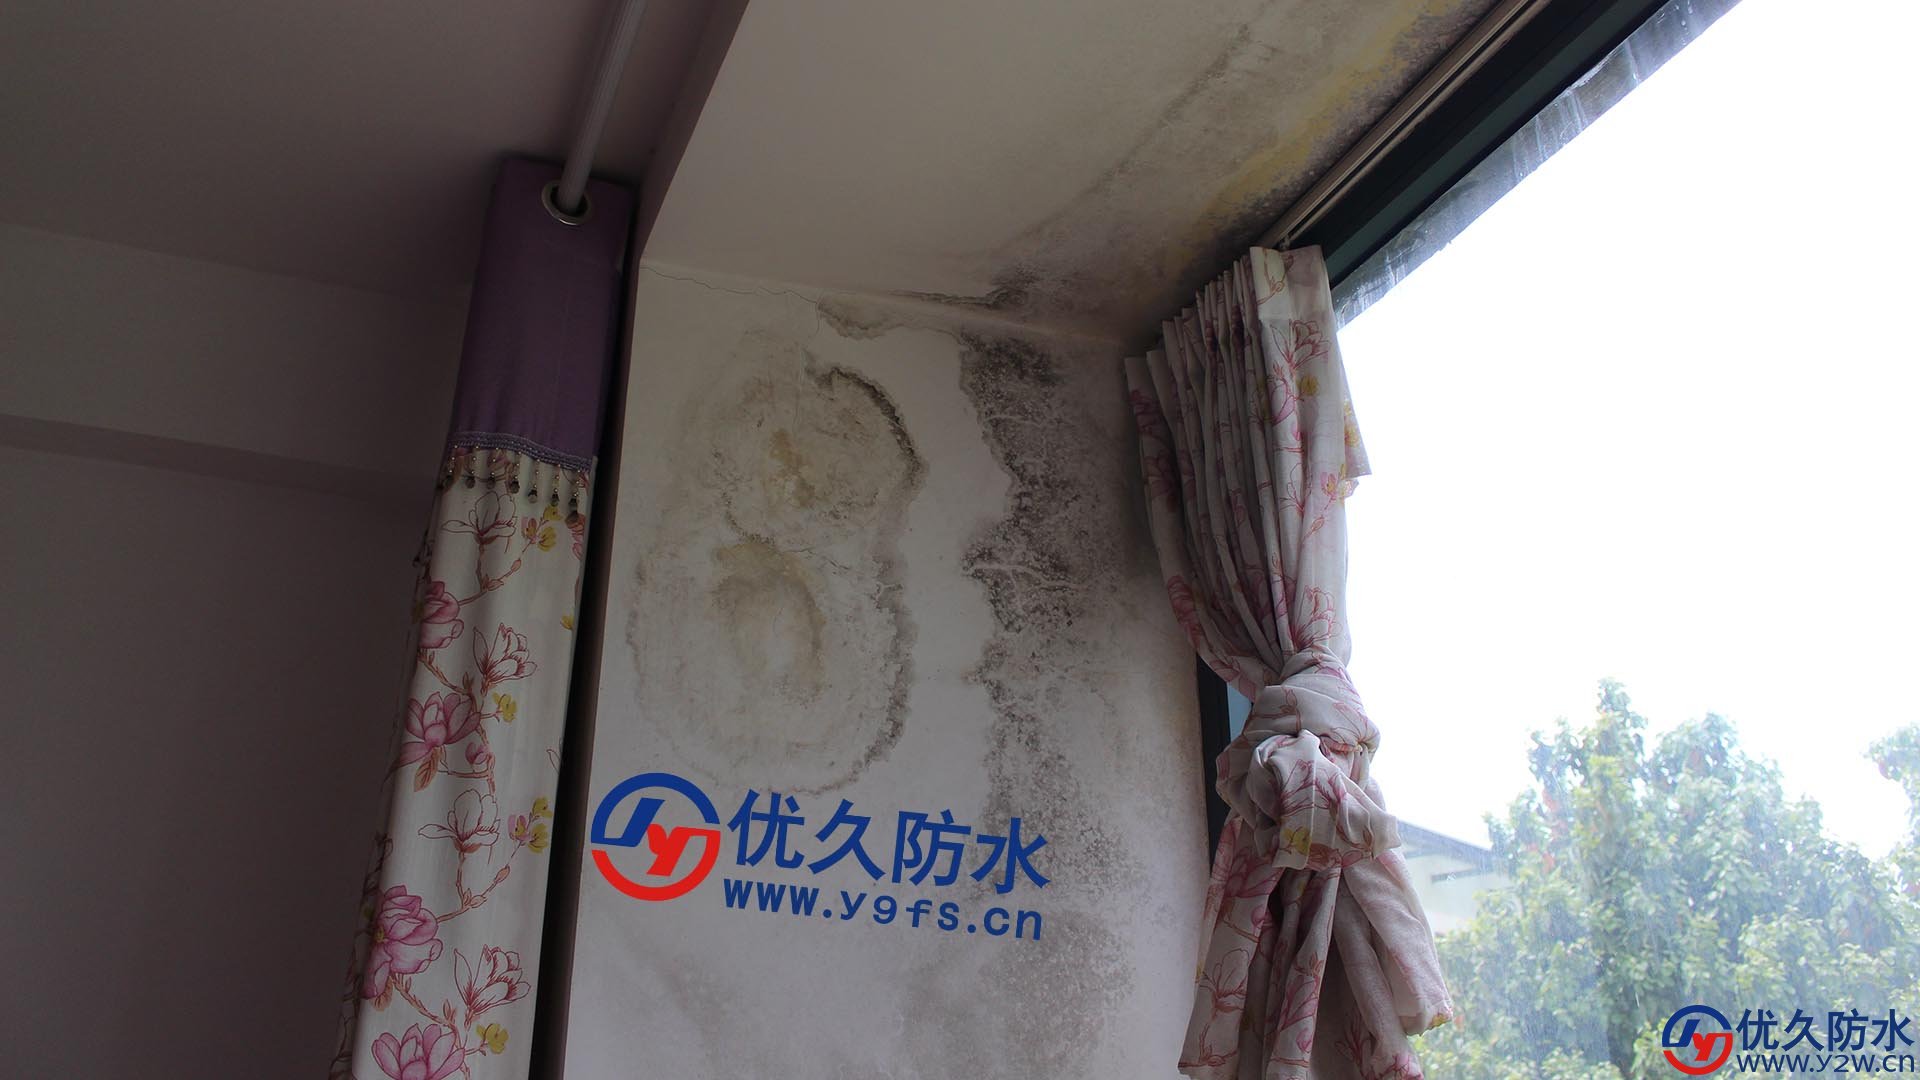 因为没有窗檐，雨水顺着窗户墙壁流，导致窗户上半部分渗漏特别严重